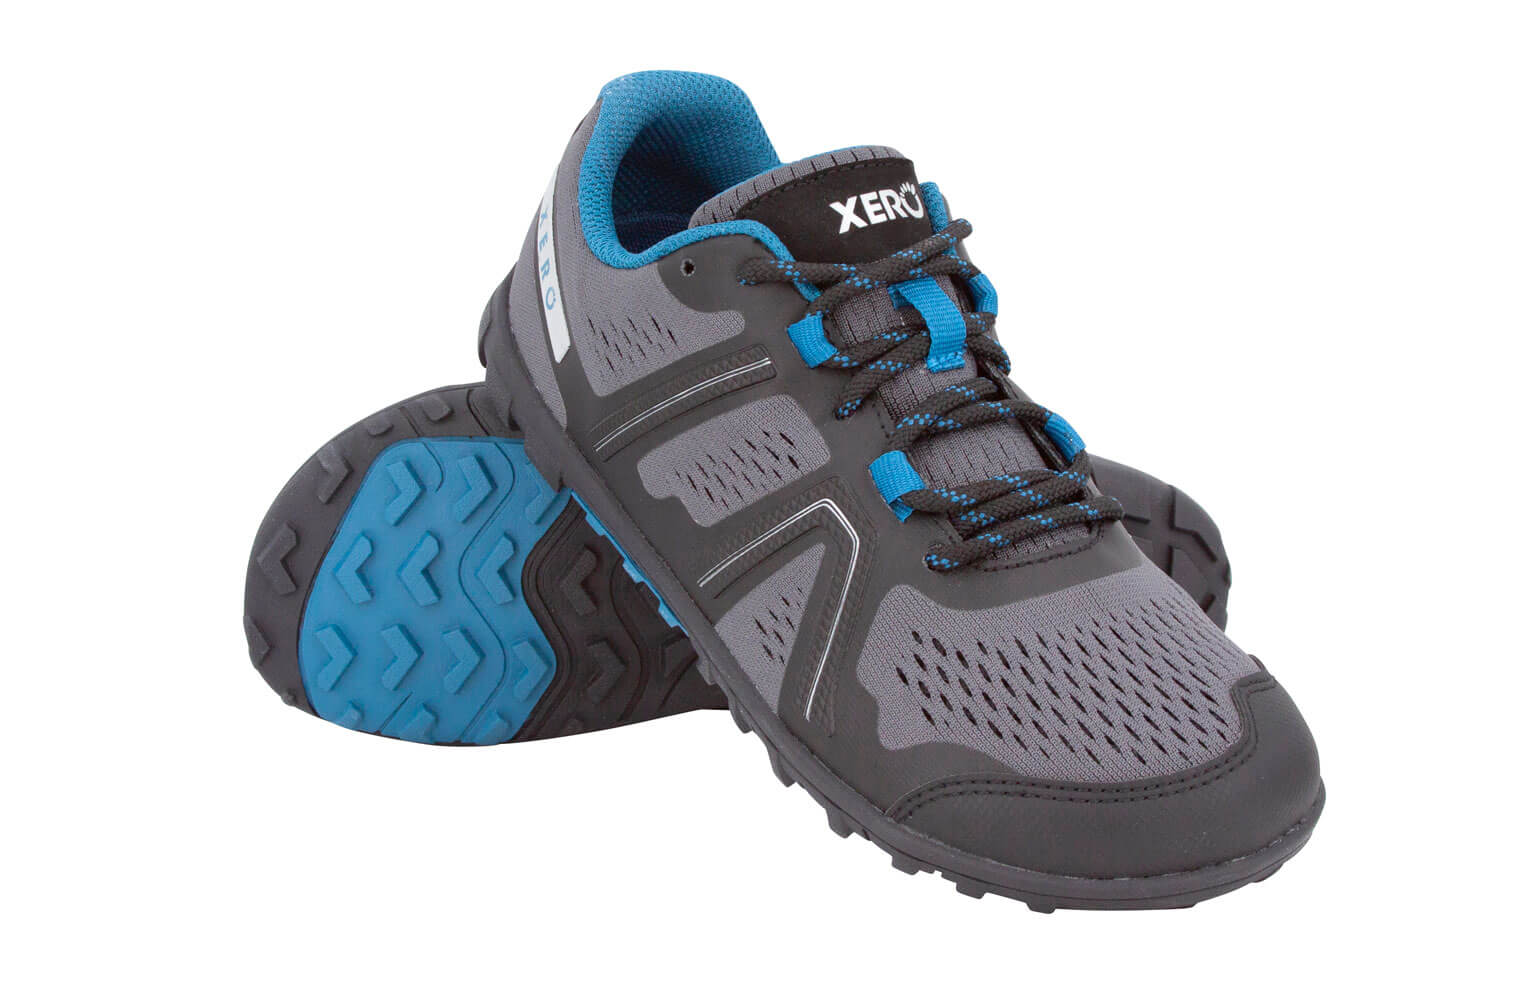 Barefoot Running Shoes for Men, Women & Kids - Xero Shoes